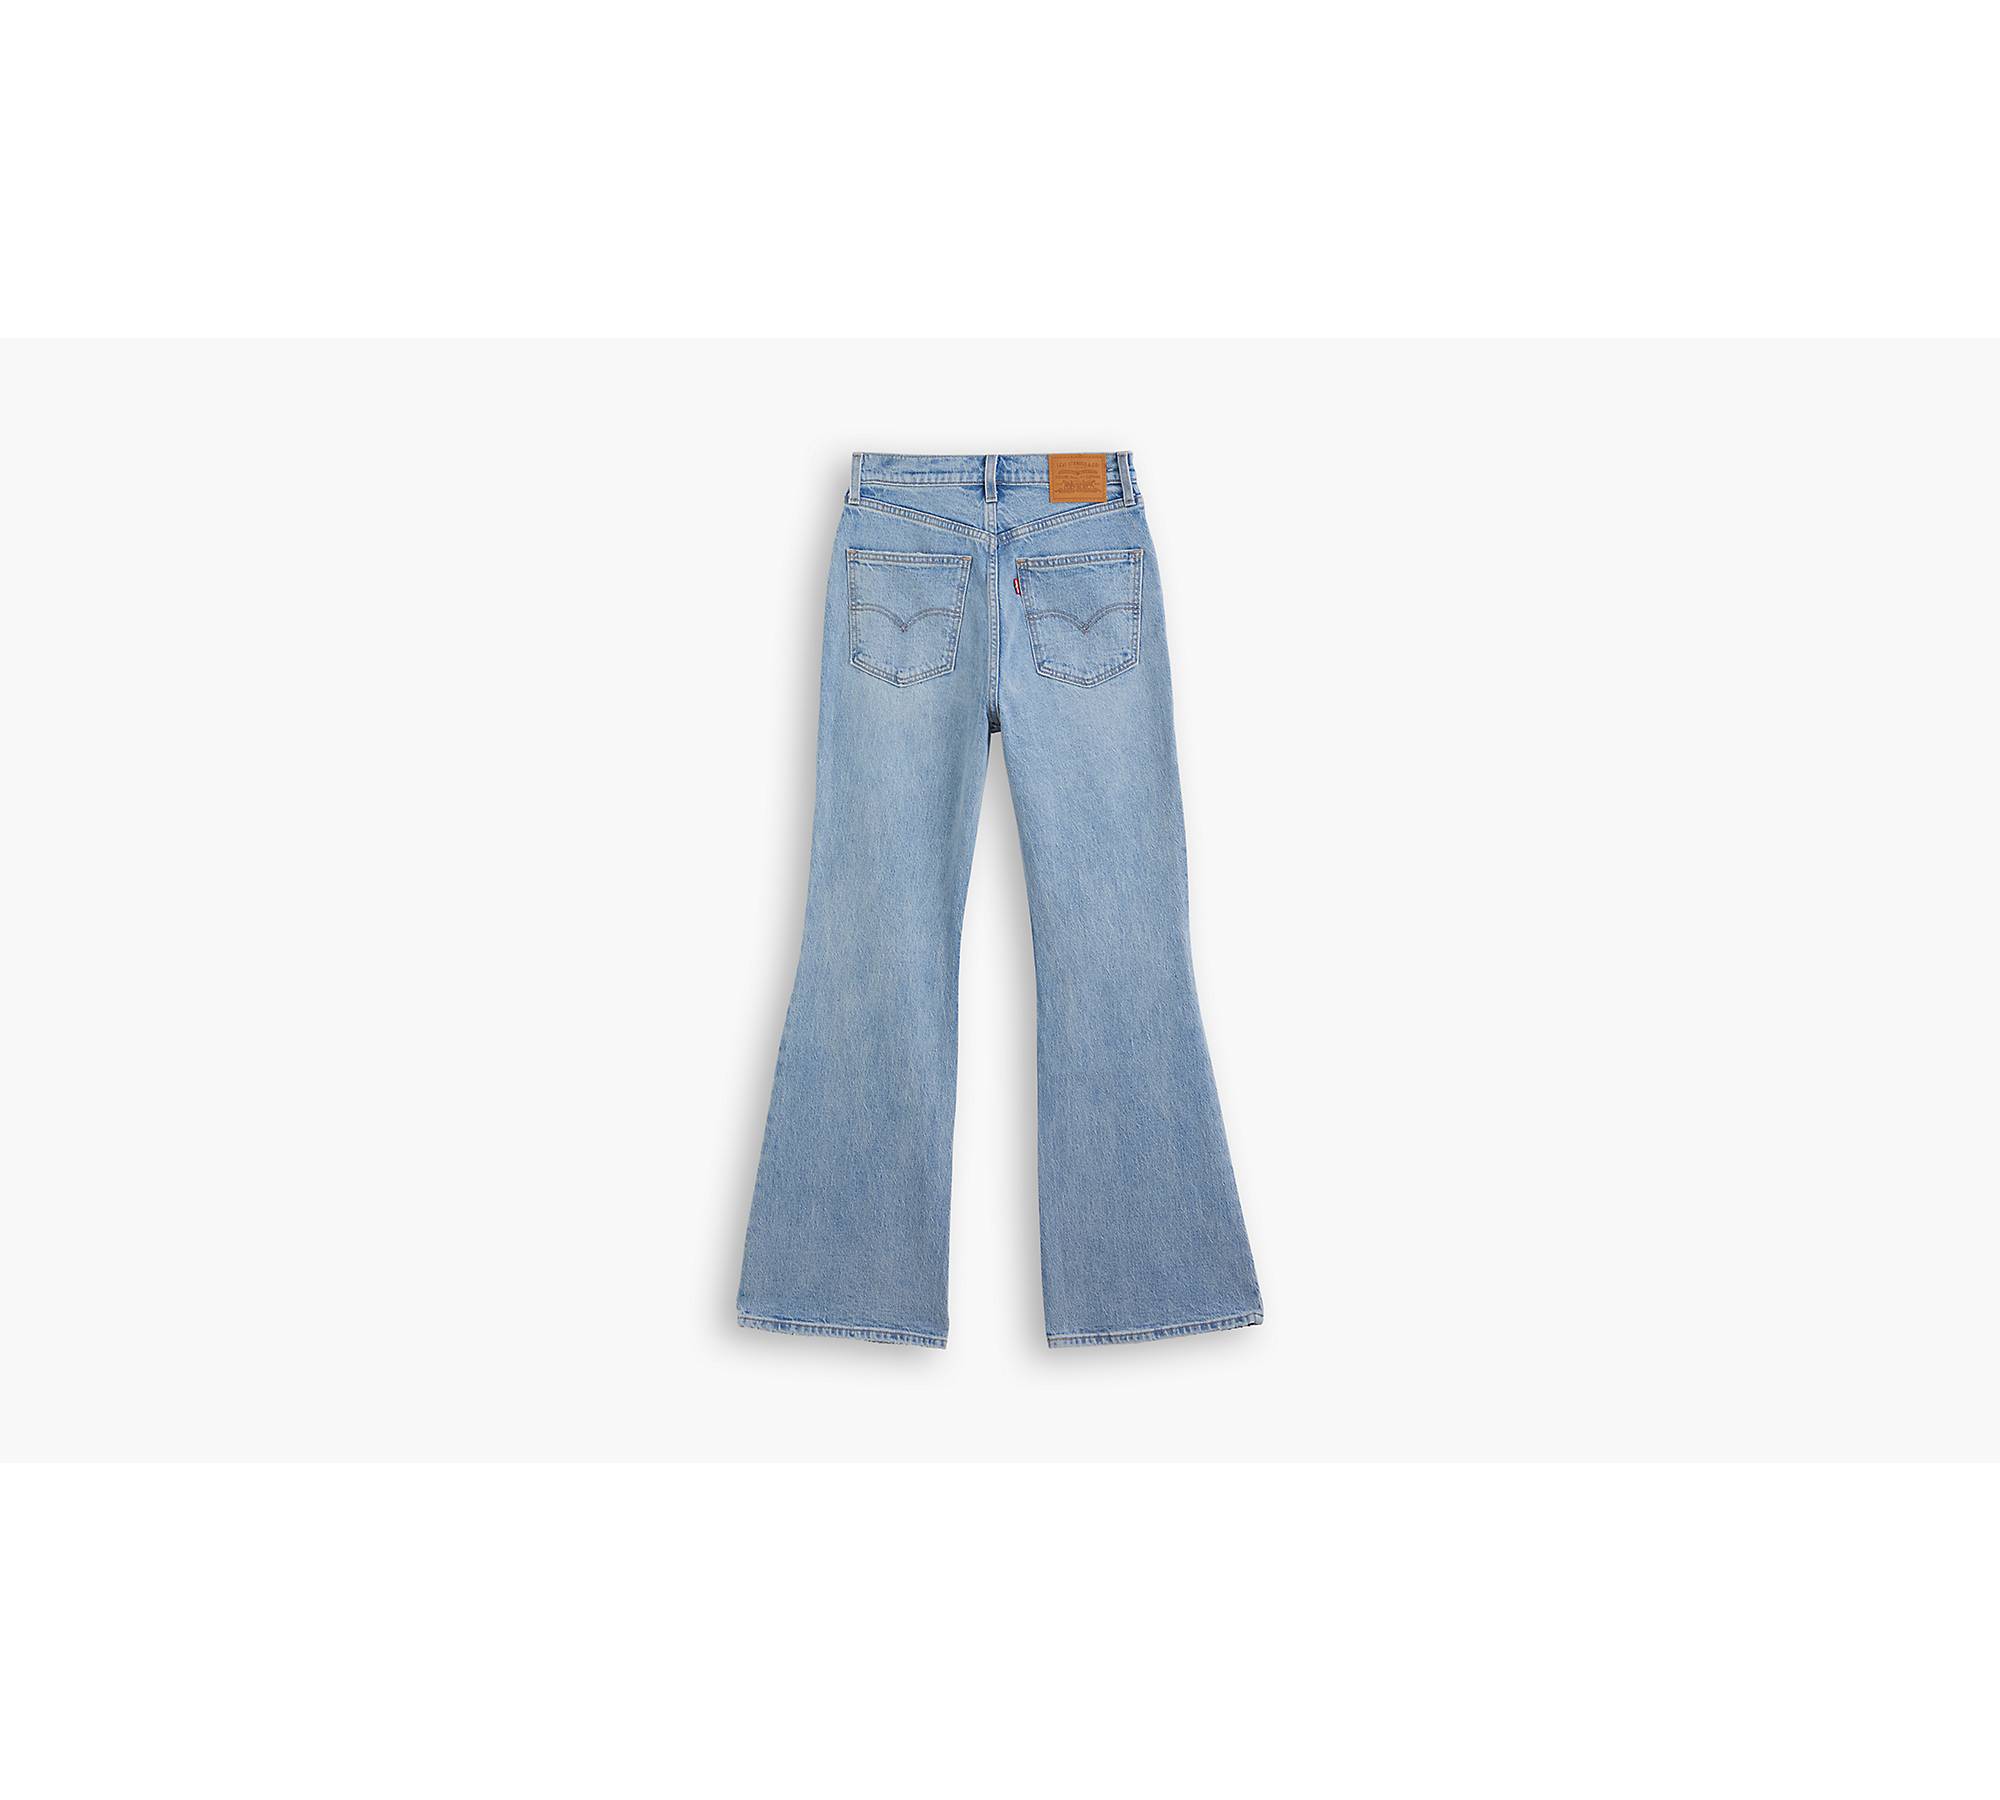 1970's 630® Men's Jeans - Medium Wash